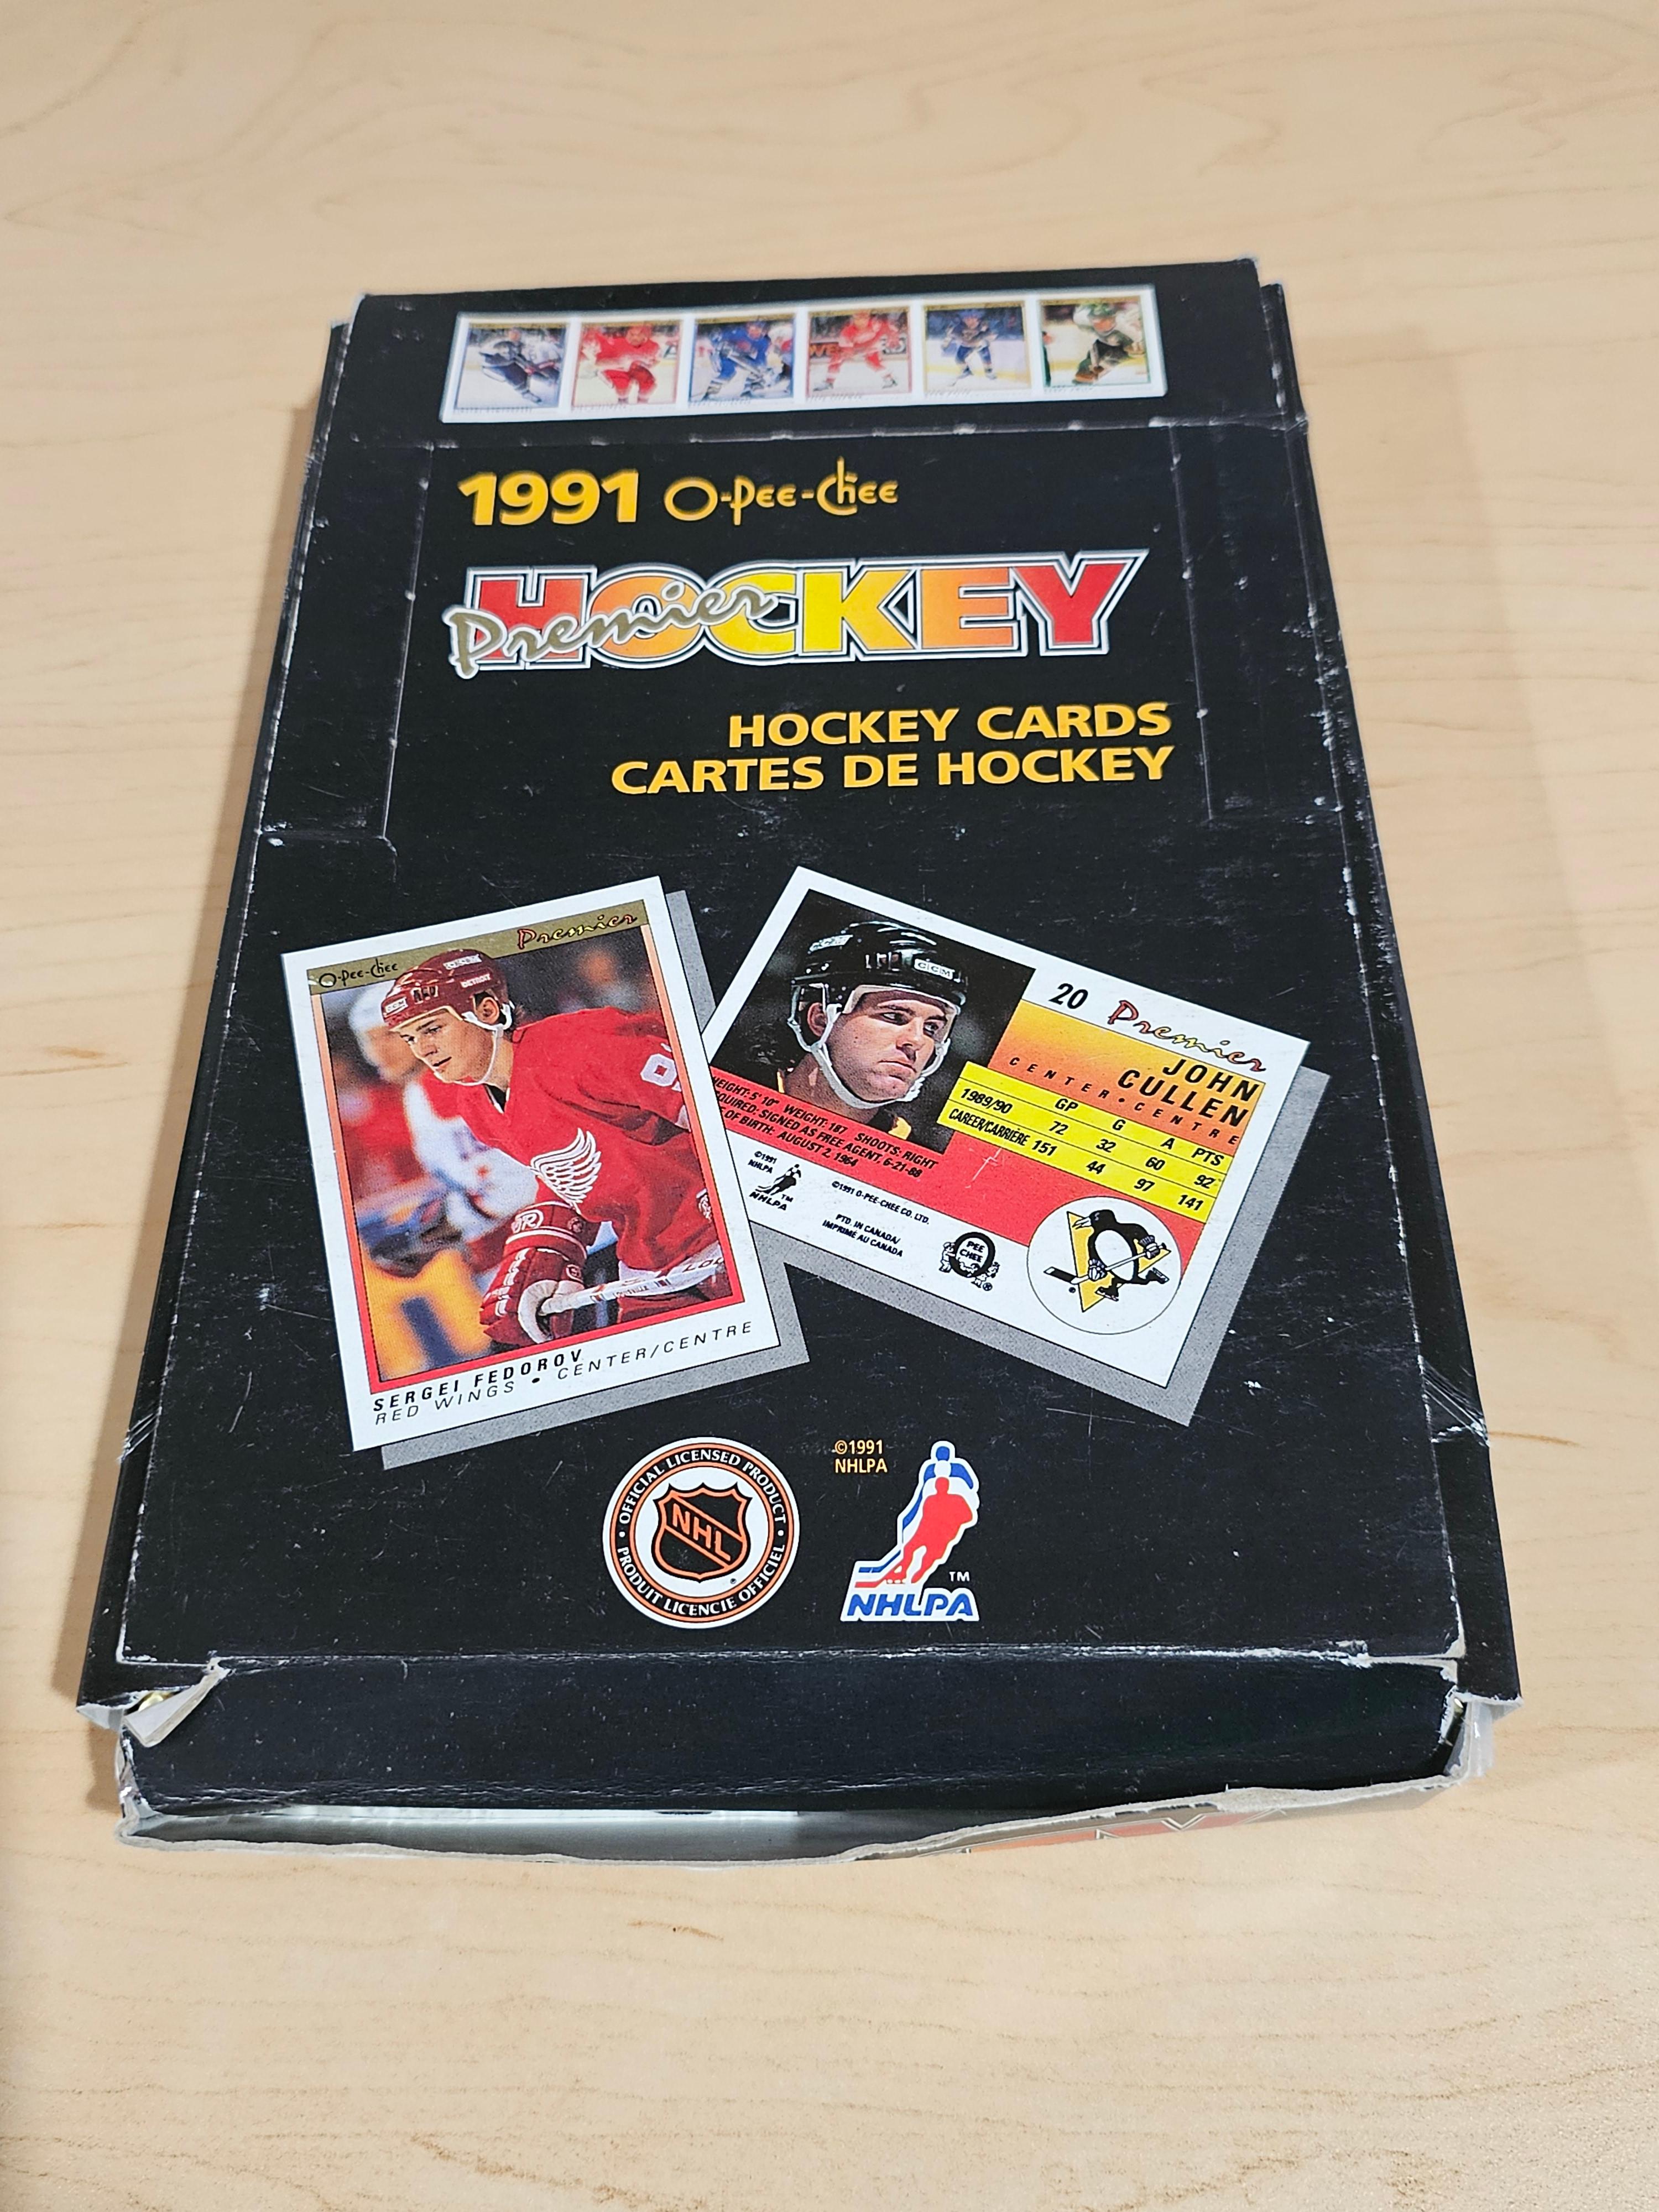 O-Pee-Chee 1991 Hockey Card Set